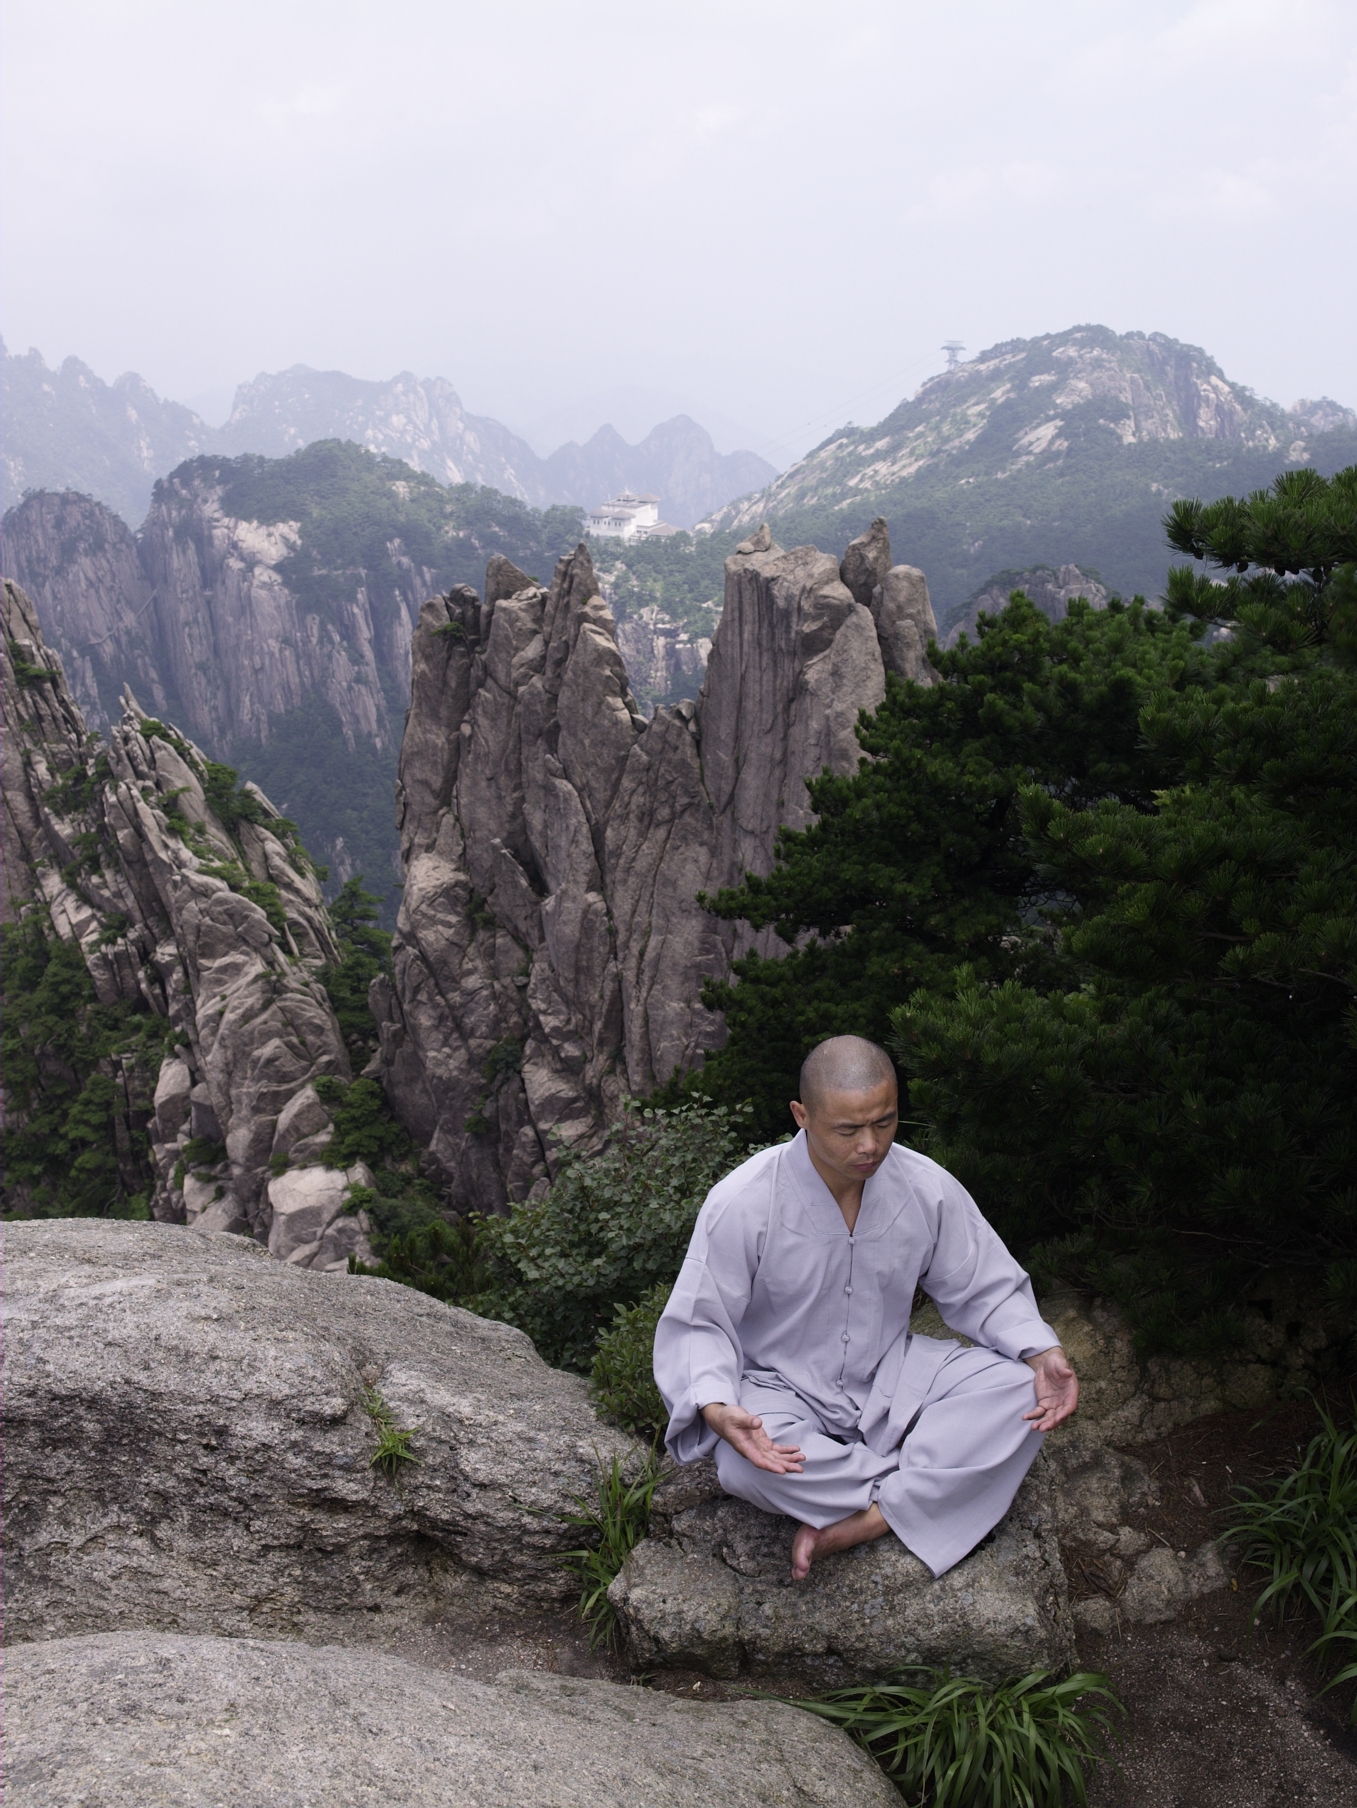 Медитация гора. Китайский монах даос. Цигун даос монах. Тибет монастырь Шаолинь. Горный Китай монастырь Чжуан.